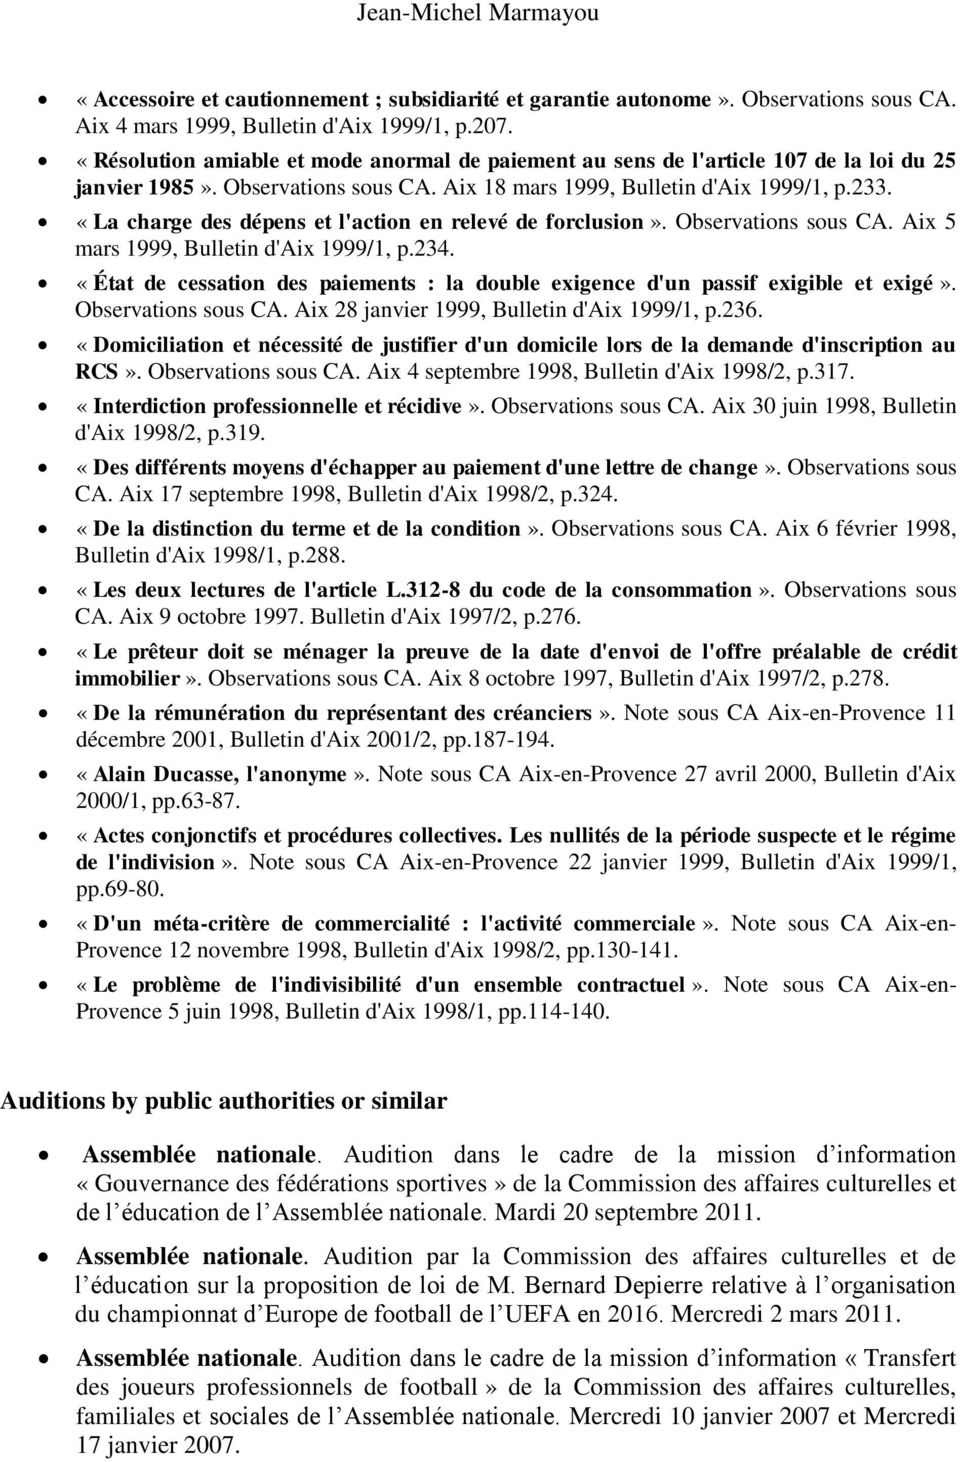 «La charge des dépens et l'action en relevé de forclusion». Observations sous CA. Aix 5 mars 1999, Bulletin d'aix 1999/1, p.234.